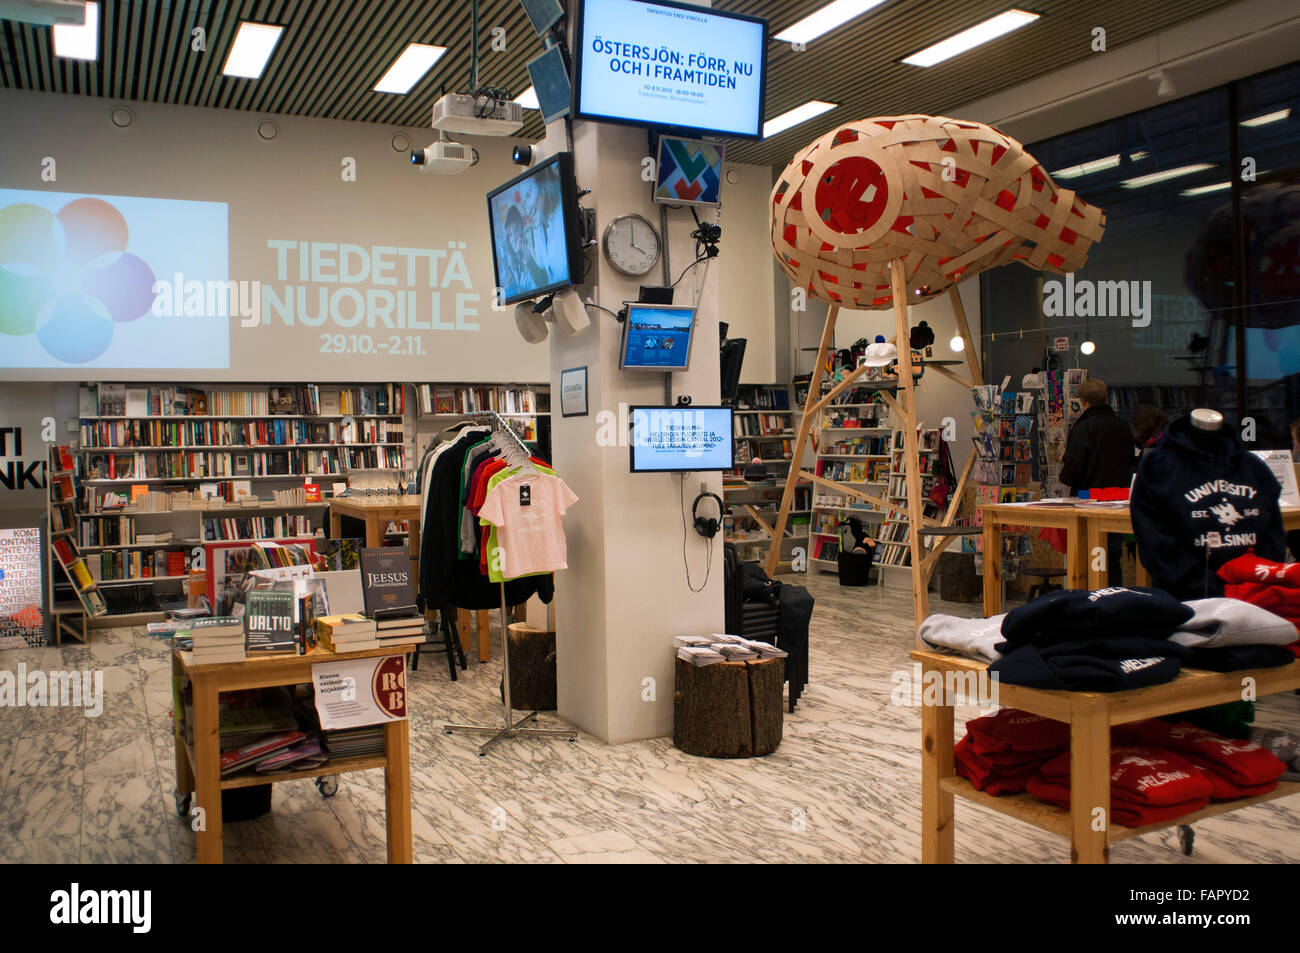 Tiedettä Nuorille store, Helsinki, Finlandia. Shop Tiedettä Nuorille è un esempio di come è possibile combinare un negozio di abbigliamento, una ca Foto Stock